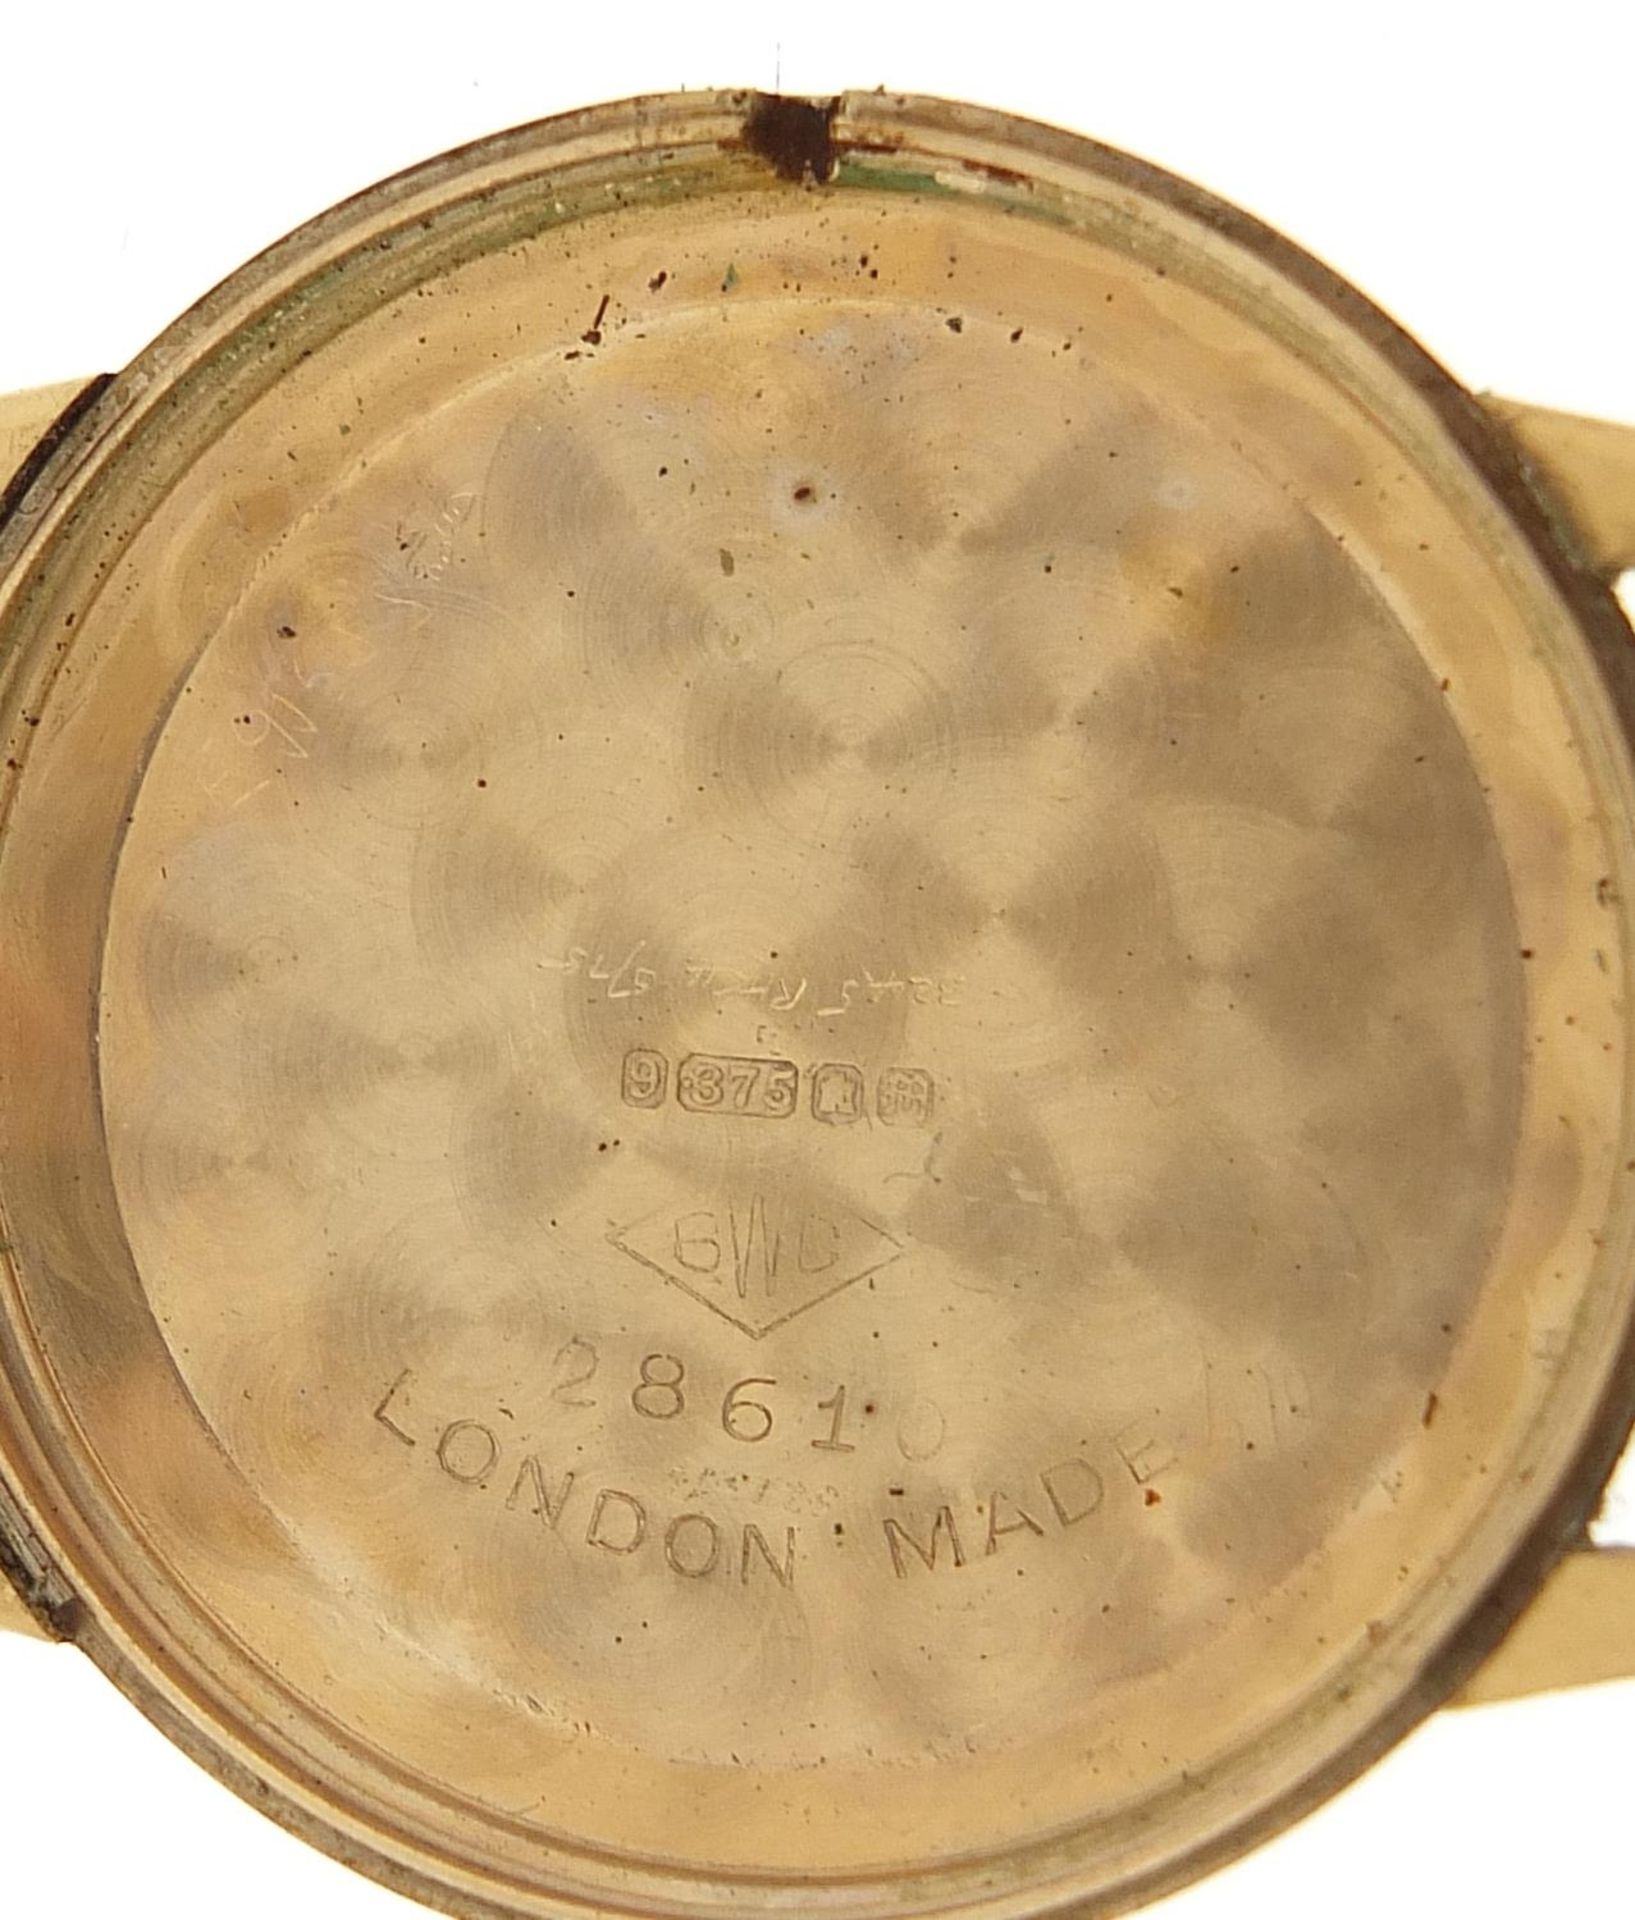 Accurist, gentlemen's 9ct gold wristwatch with date aperture, 34mm in diameter - Image 3 of 6